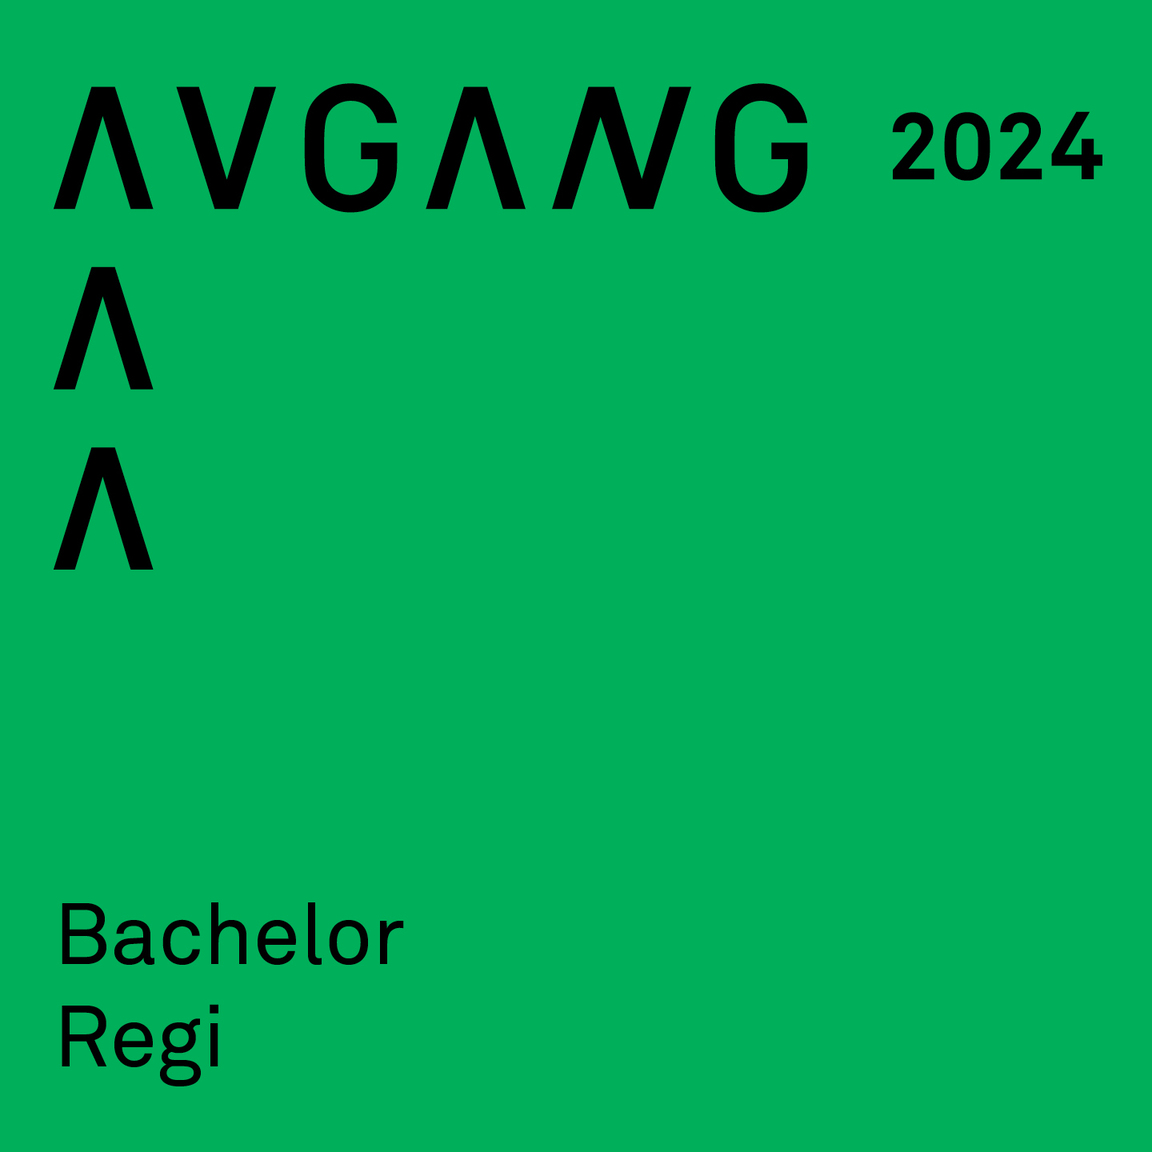 Avgang 2024: Bachelor regi